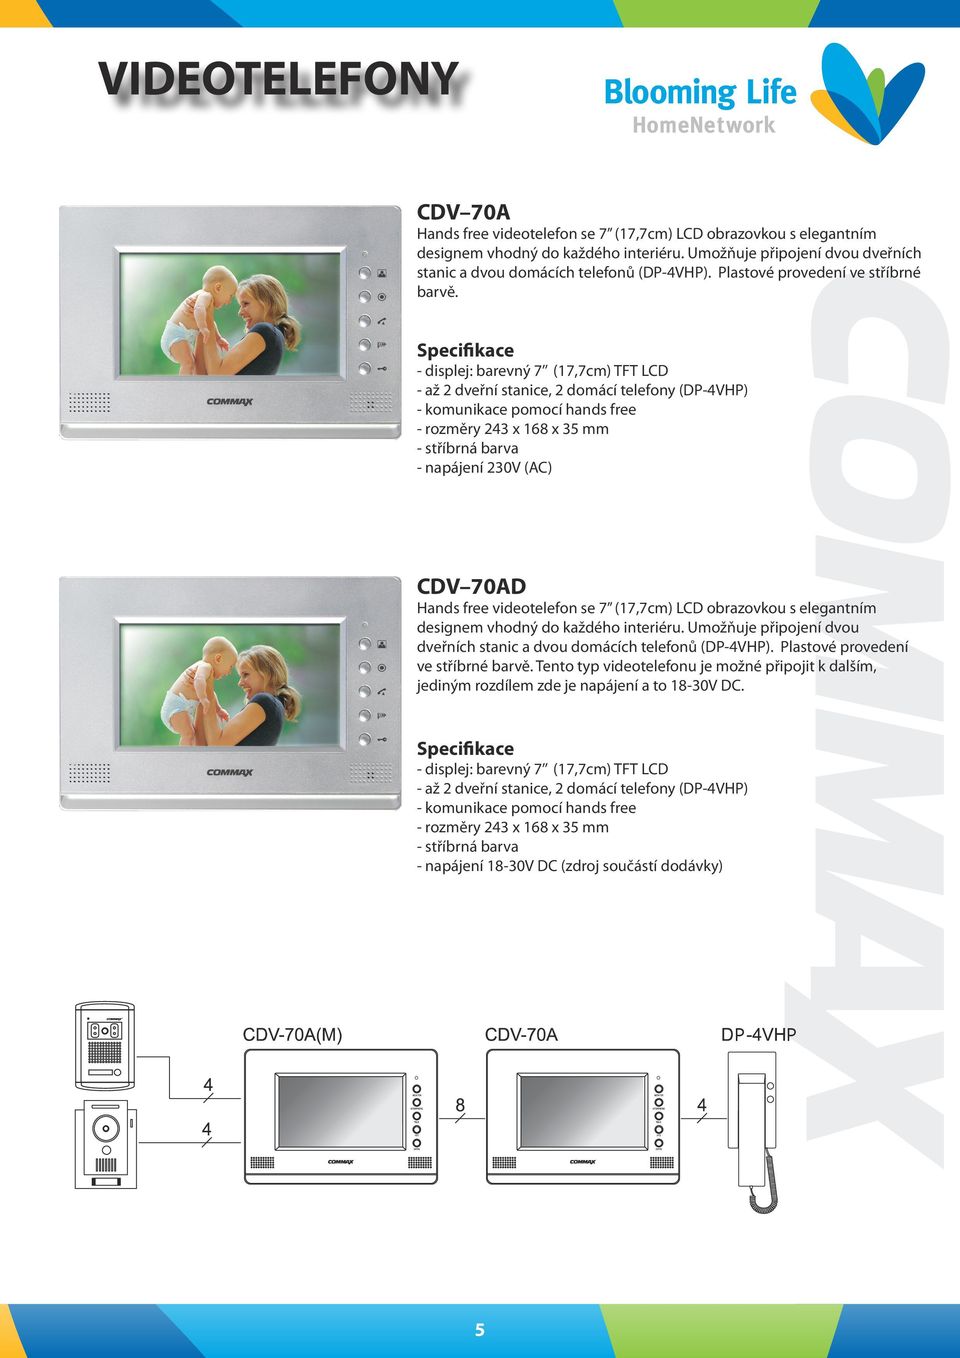 - displej: barevný 7 (17,7cm) TFT LCD - komunikace pomocí hands free - rozměry 243 x 168 x 35 mm - stříbrná barva CDV 70AD Hands free videotelefon se 7 (17,7cm) LCD obrazovkou s elegantním designem